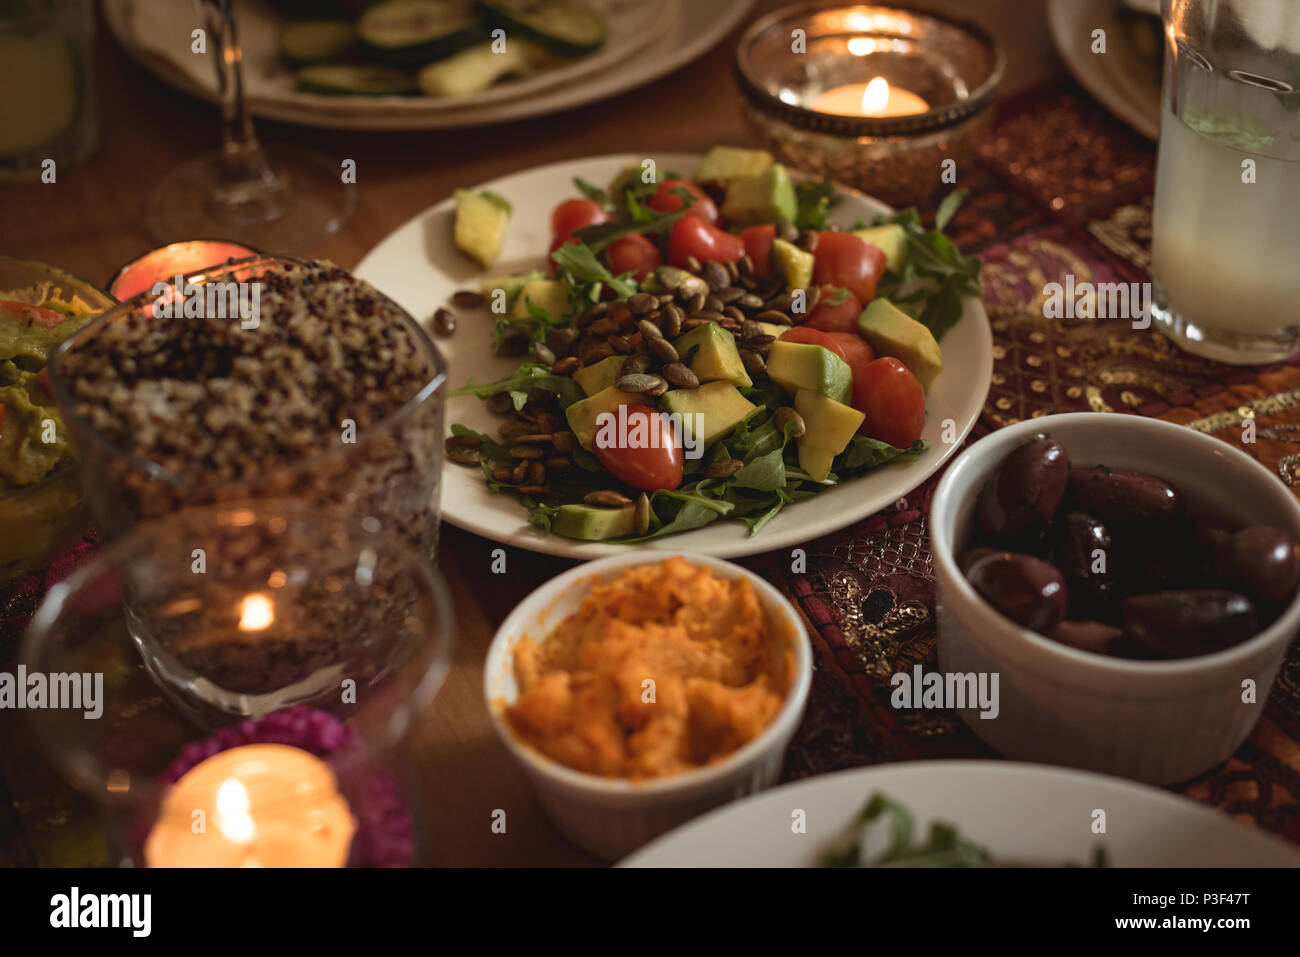 Die Auswahl an Speisen am Tisch Stockfoto